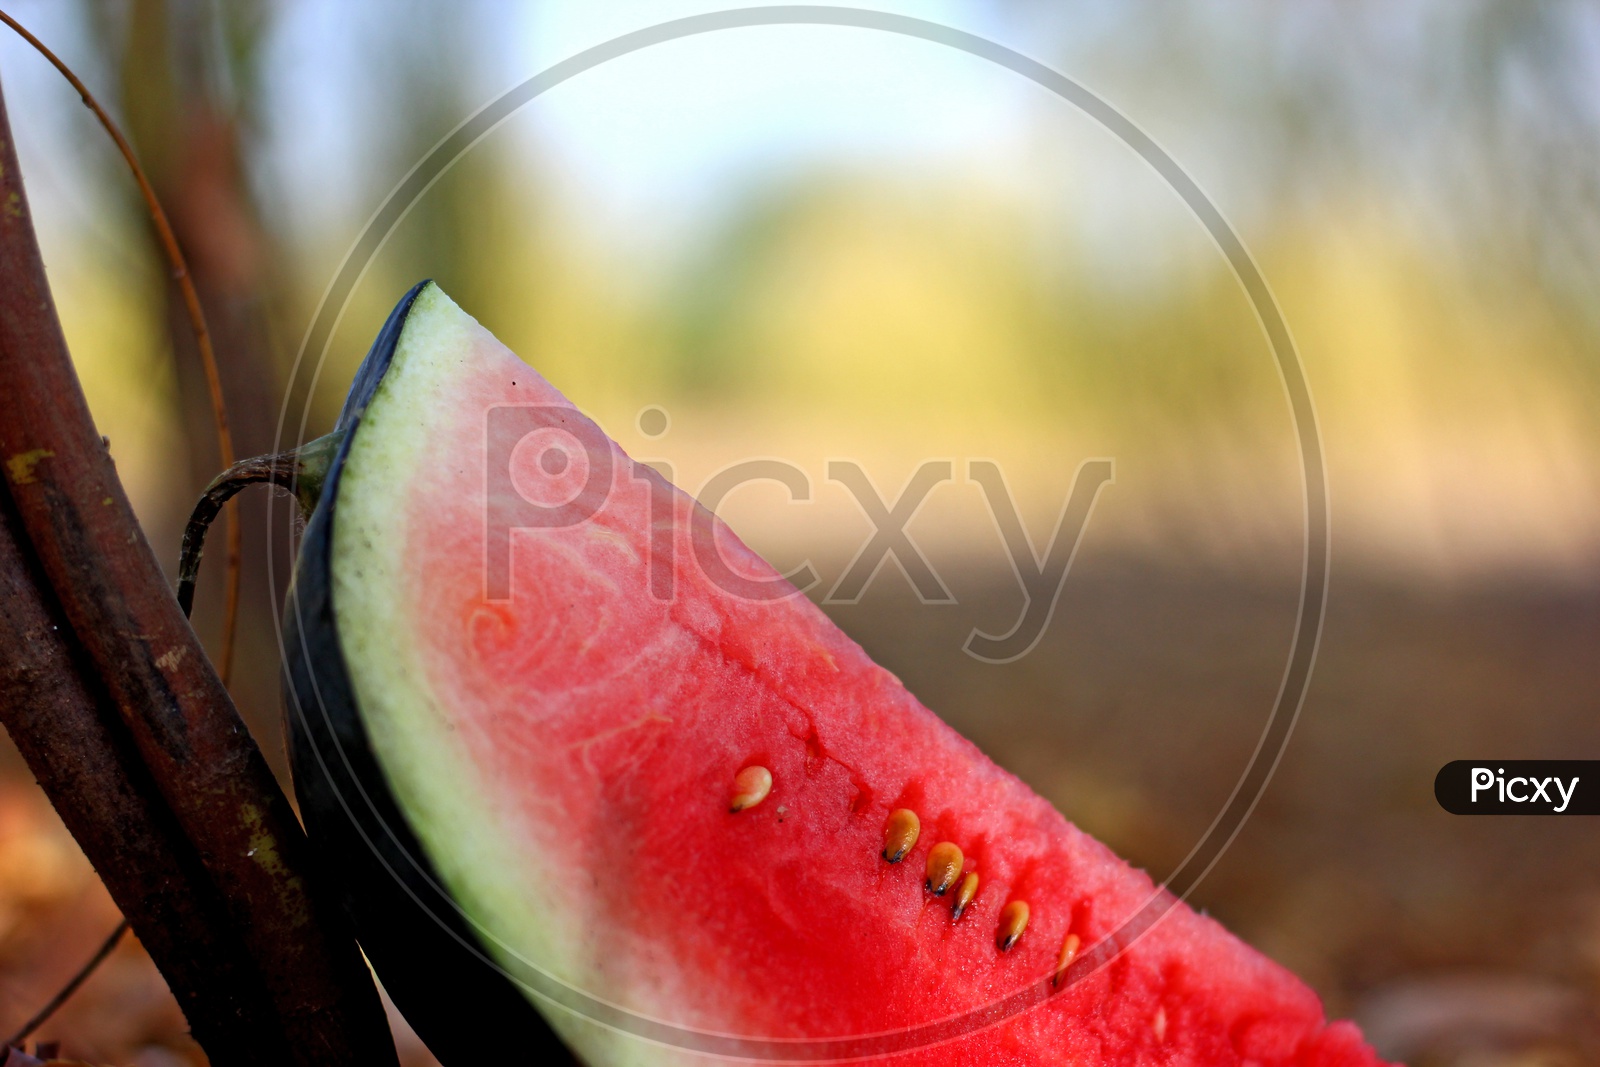 Juicy Watermelon on a Brown Feild Backdrop / Watermelon Slice in Feild